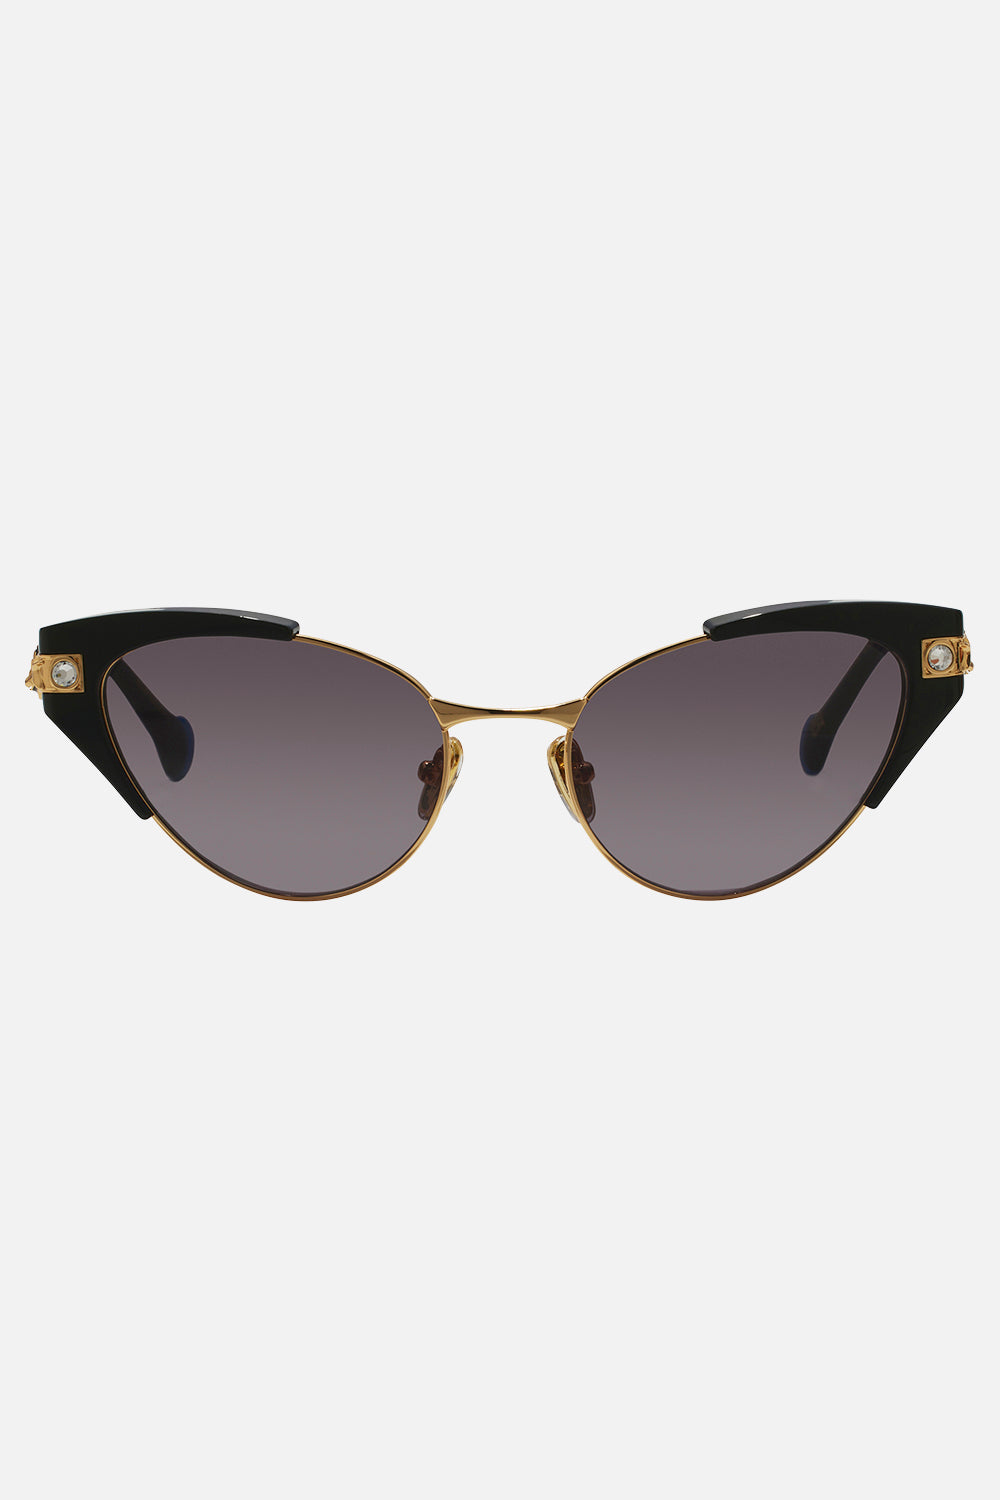 CAMILLA black designer sunglasses 